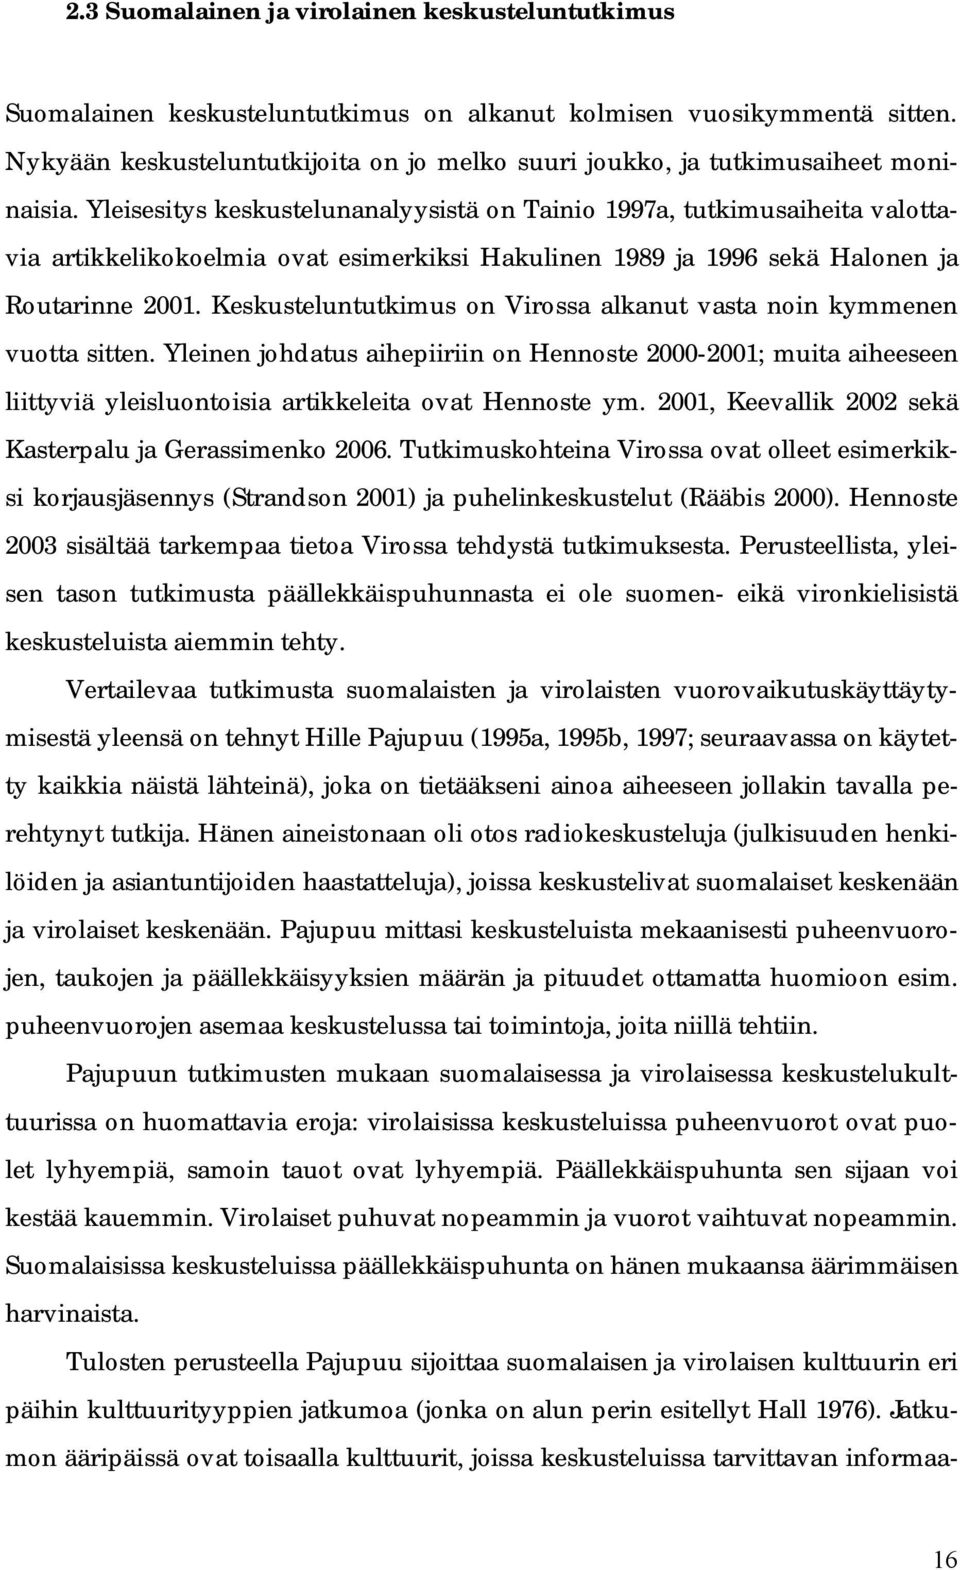 Yleisesitys keskustelunanalyysistä on Tainio 1997a, tutkimusaiheita valottavia artikkelikokoelmia ovat esimerkiksi Hakulinen 1989 ja 1996 sekä Halonen ja Routarinne 2001.